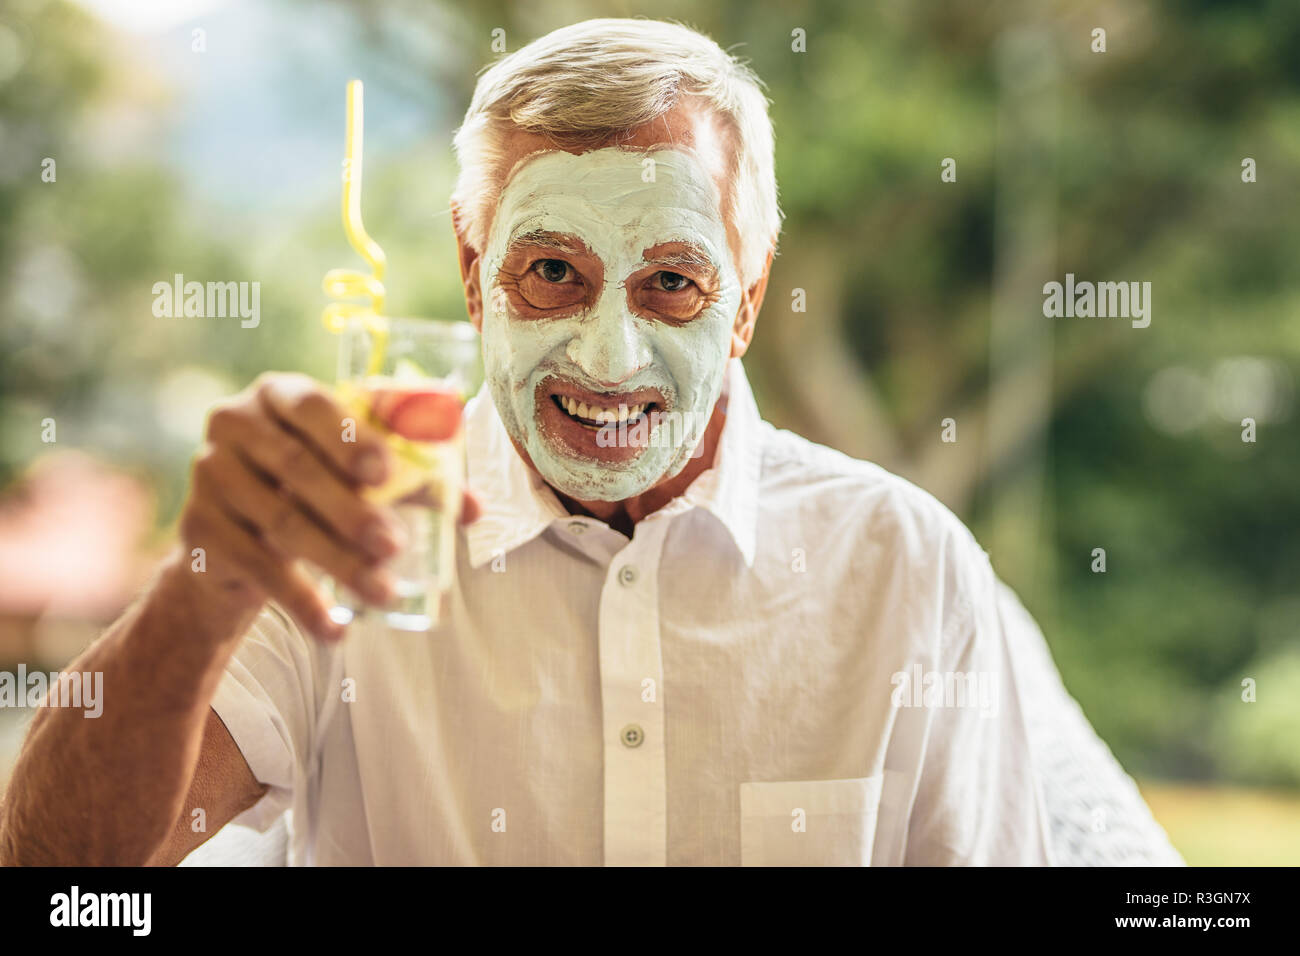 Funny man avec de l'argile masque du visage tenant un verre de jus. Traitement facial spa homme ayant pris sa retraite à l'âge. Banque D'Images